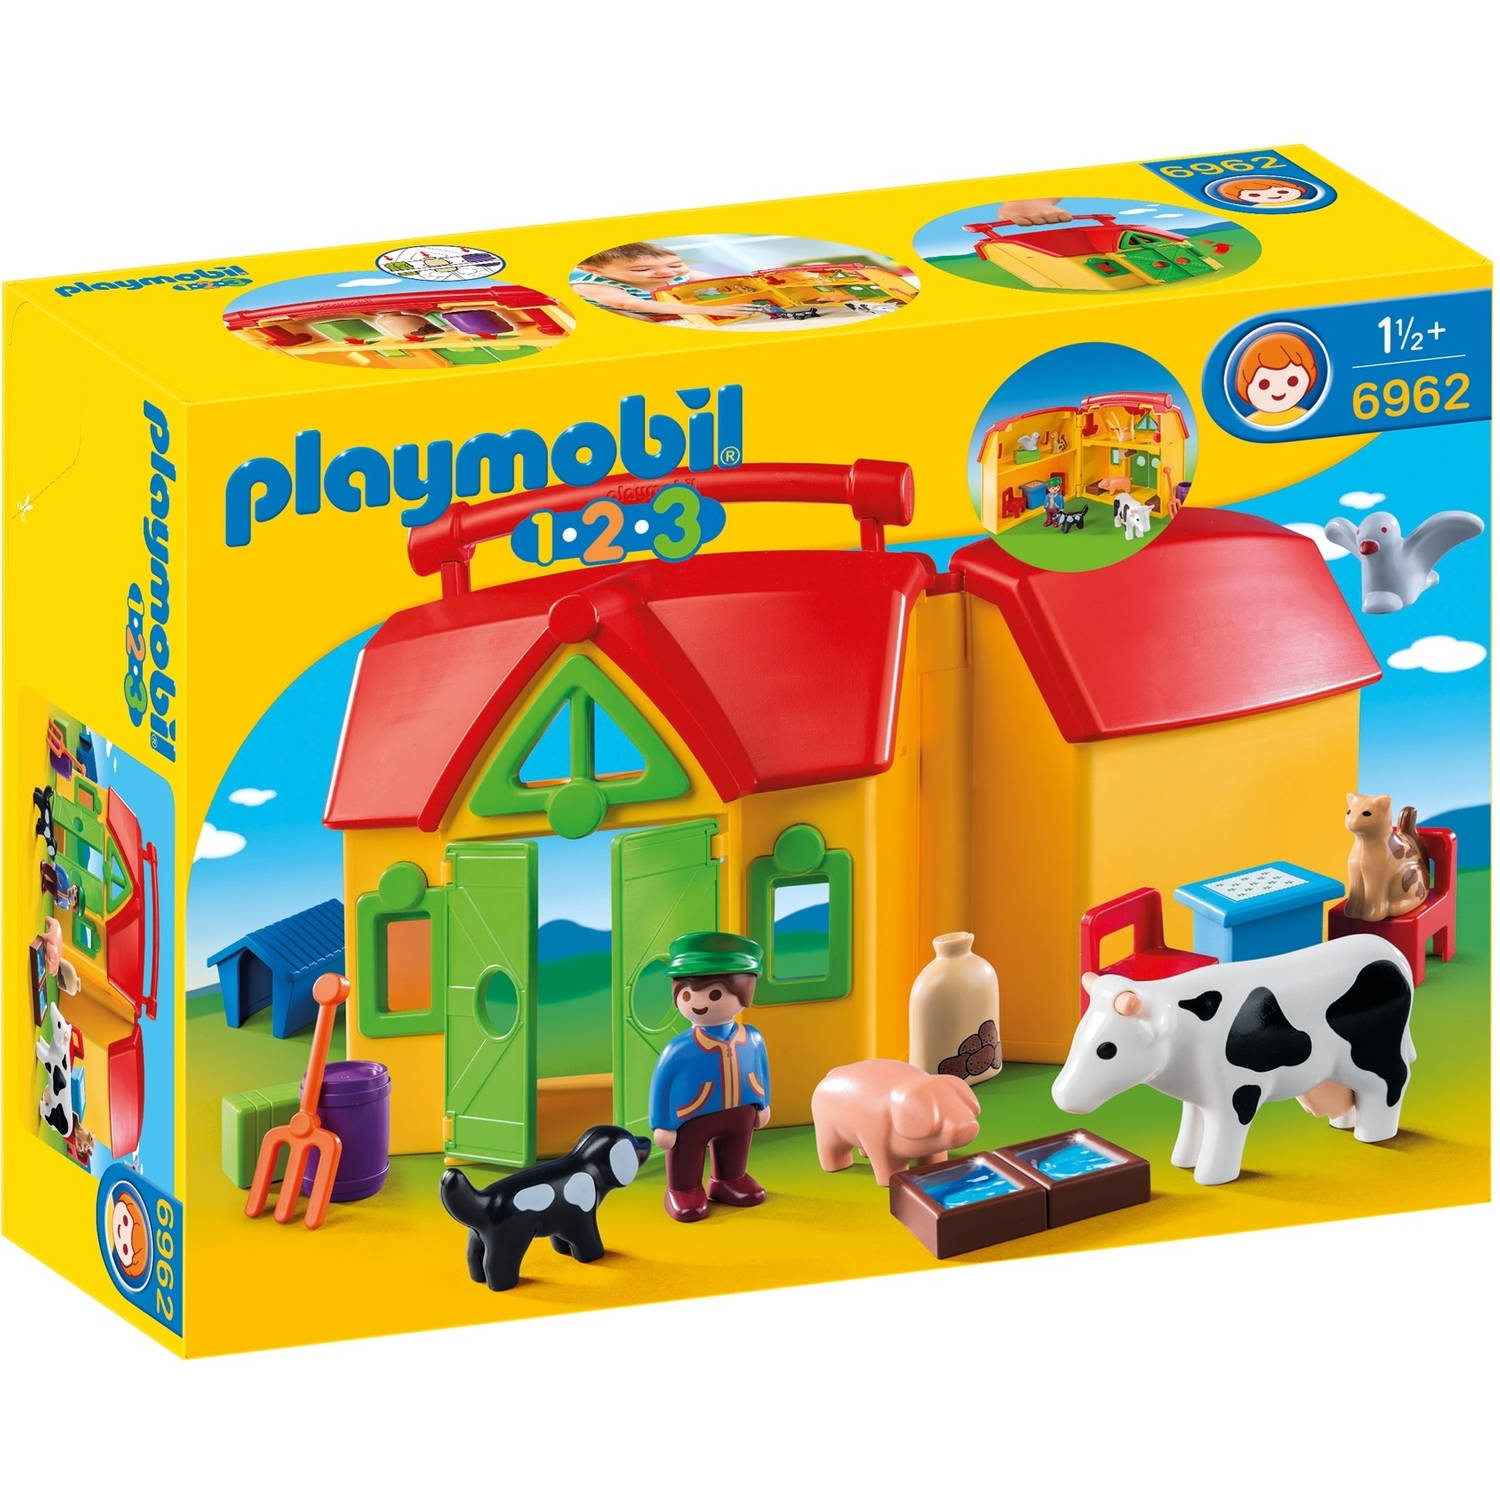 Meeneemboerderij met dieren Playmobil (6962)